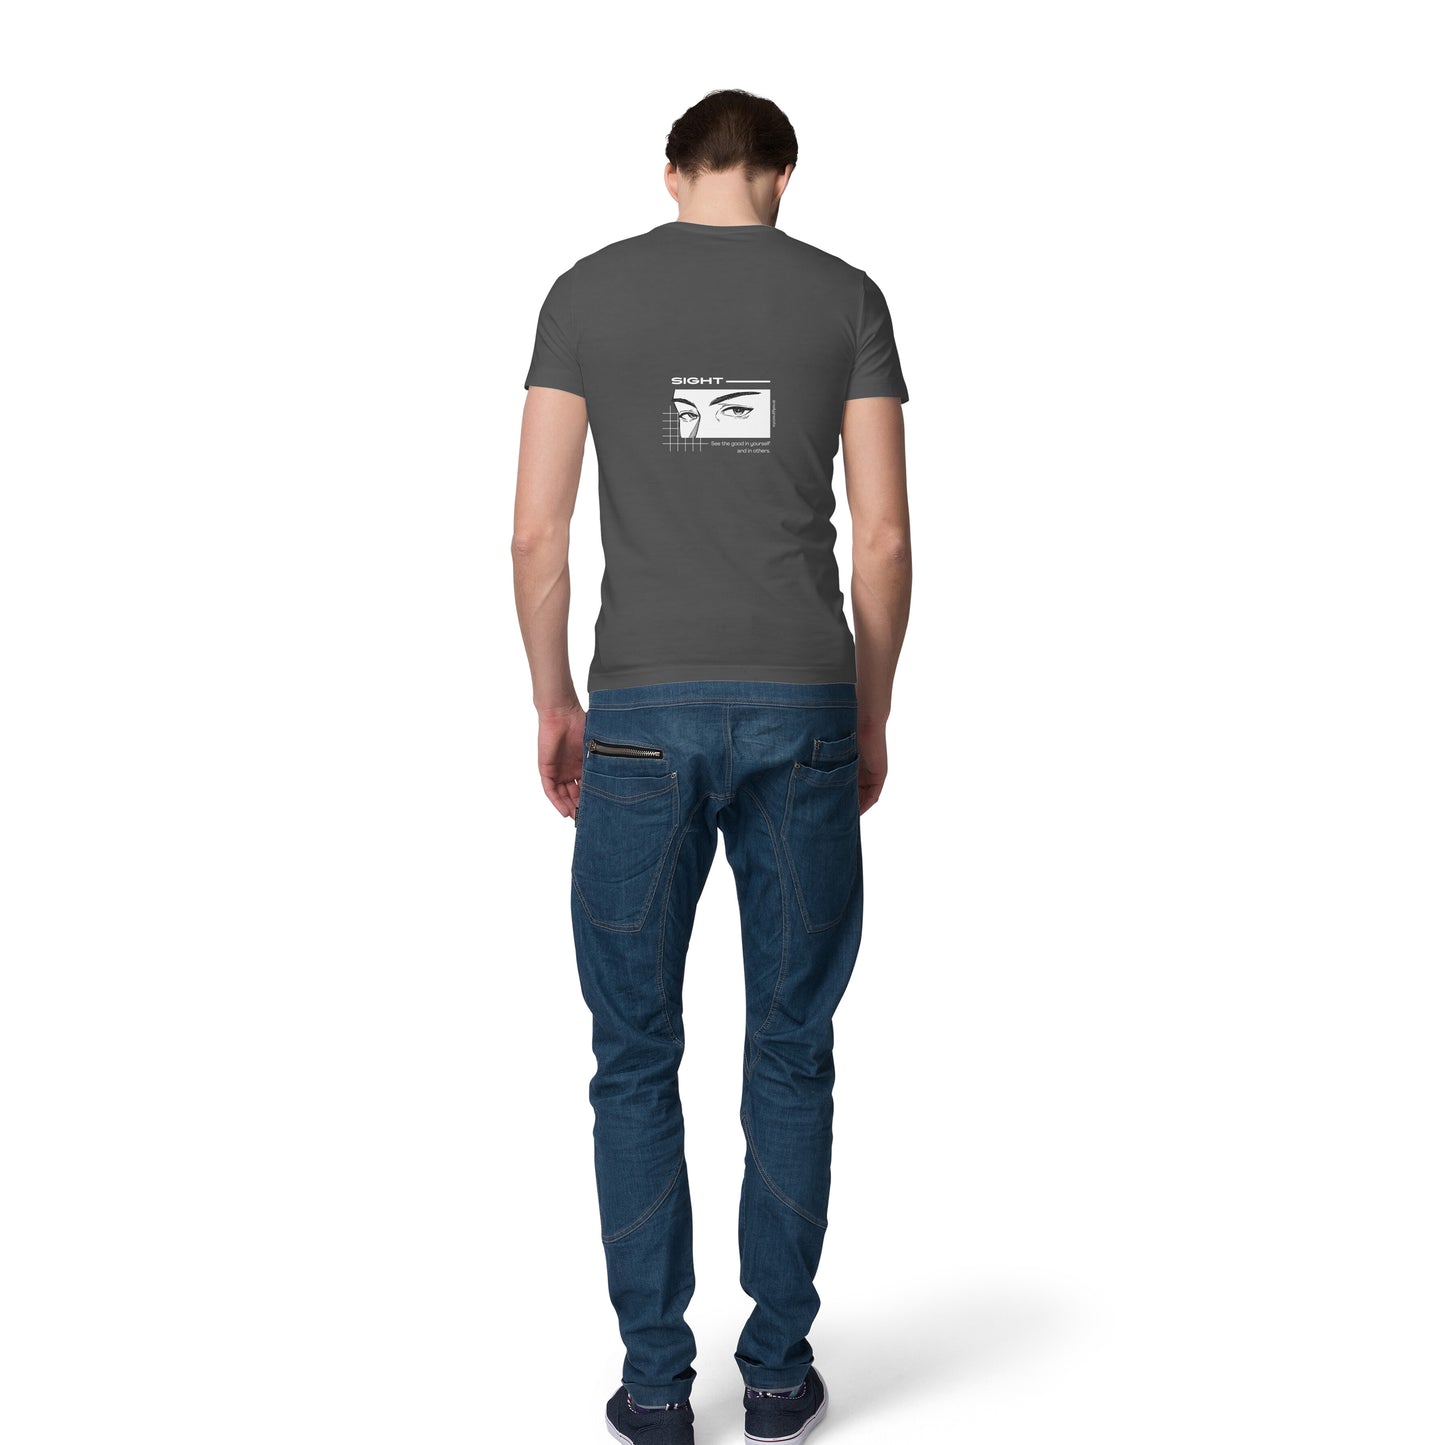 Charcoal grey - Sight Slogan - Back Design T-shirt - Men